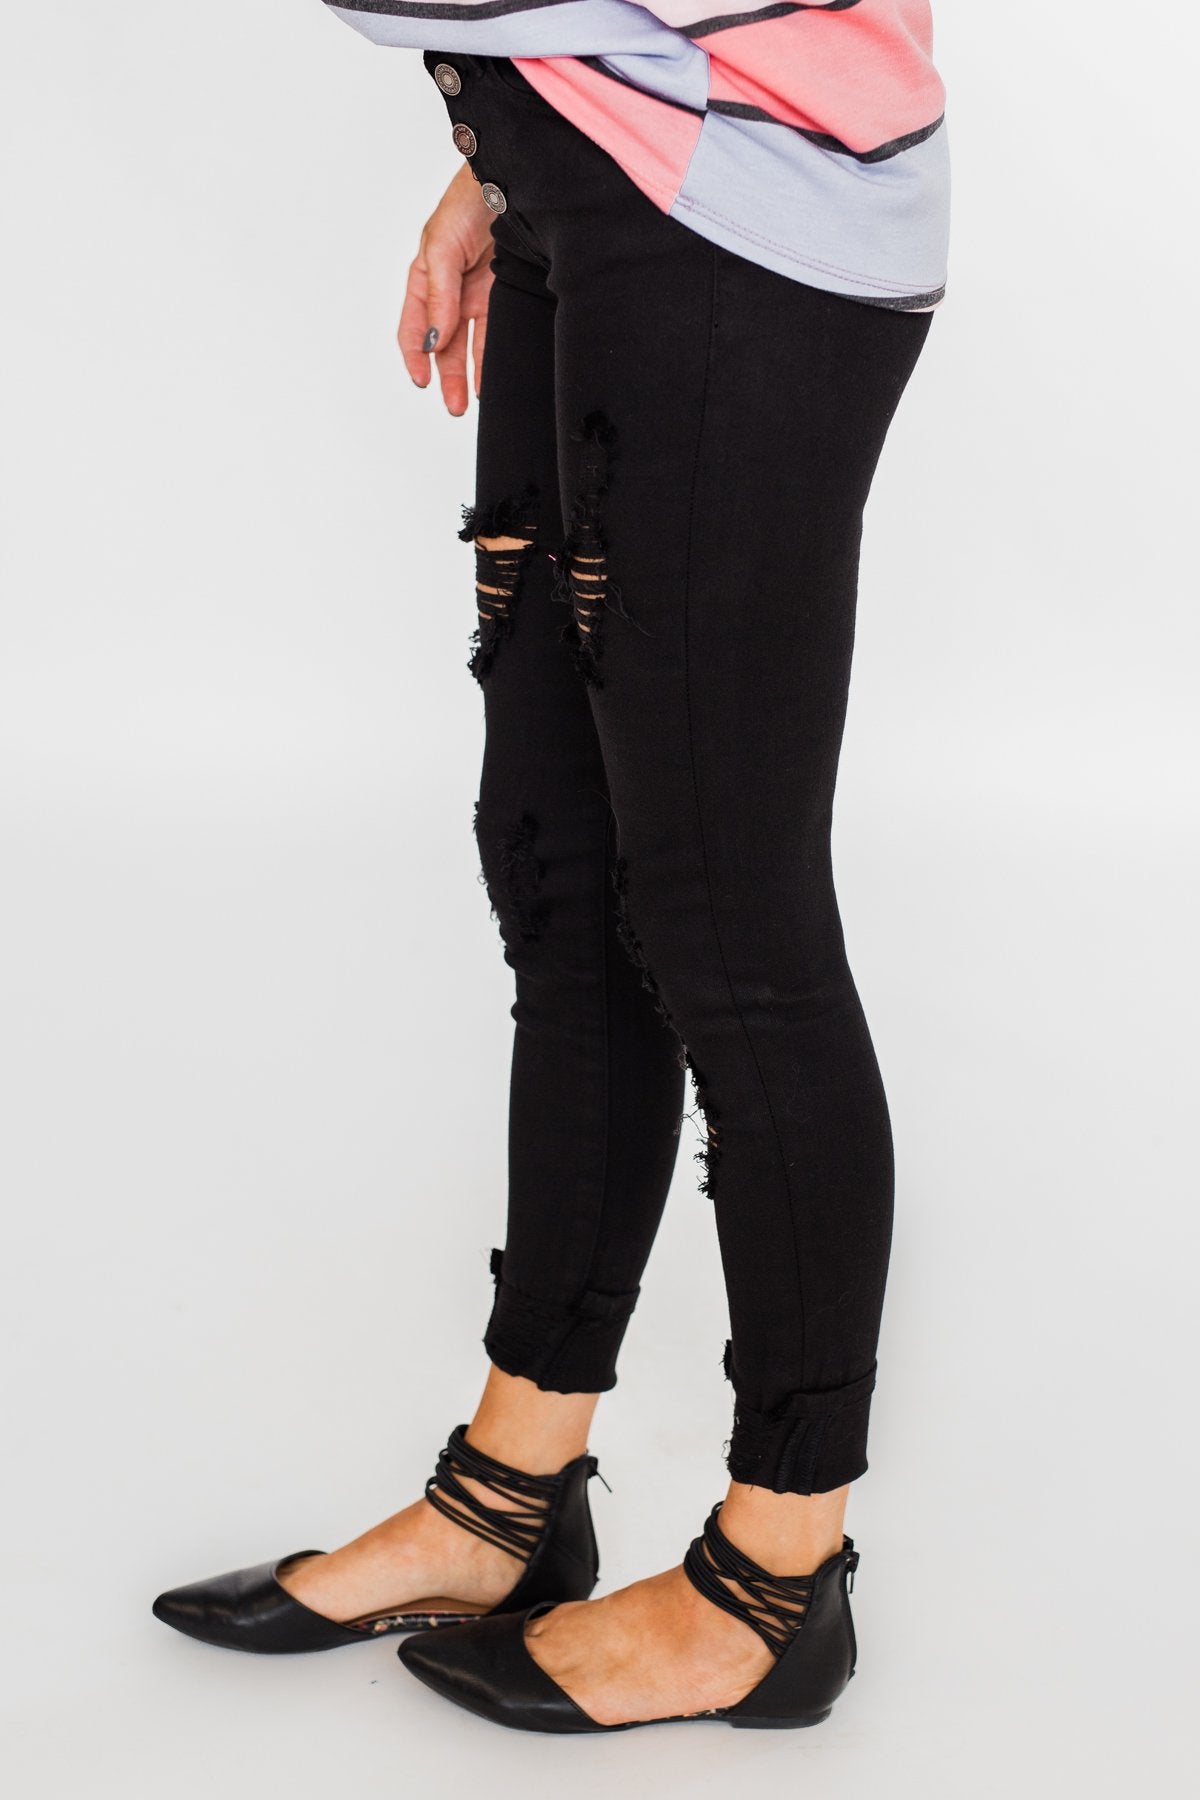 KanCan Distressed Skinny Jeans- Elsie Wash